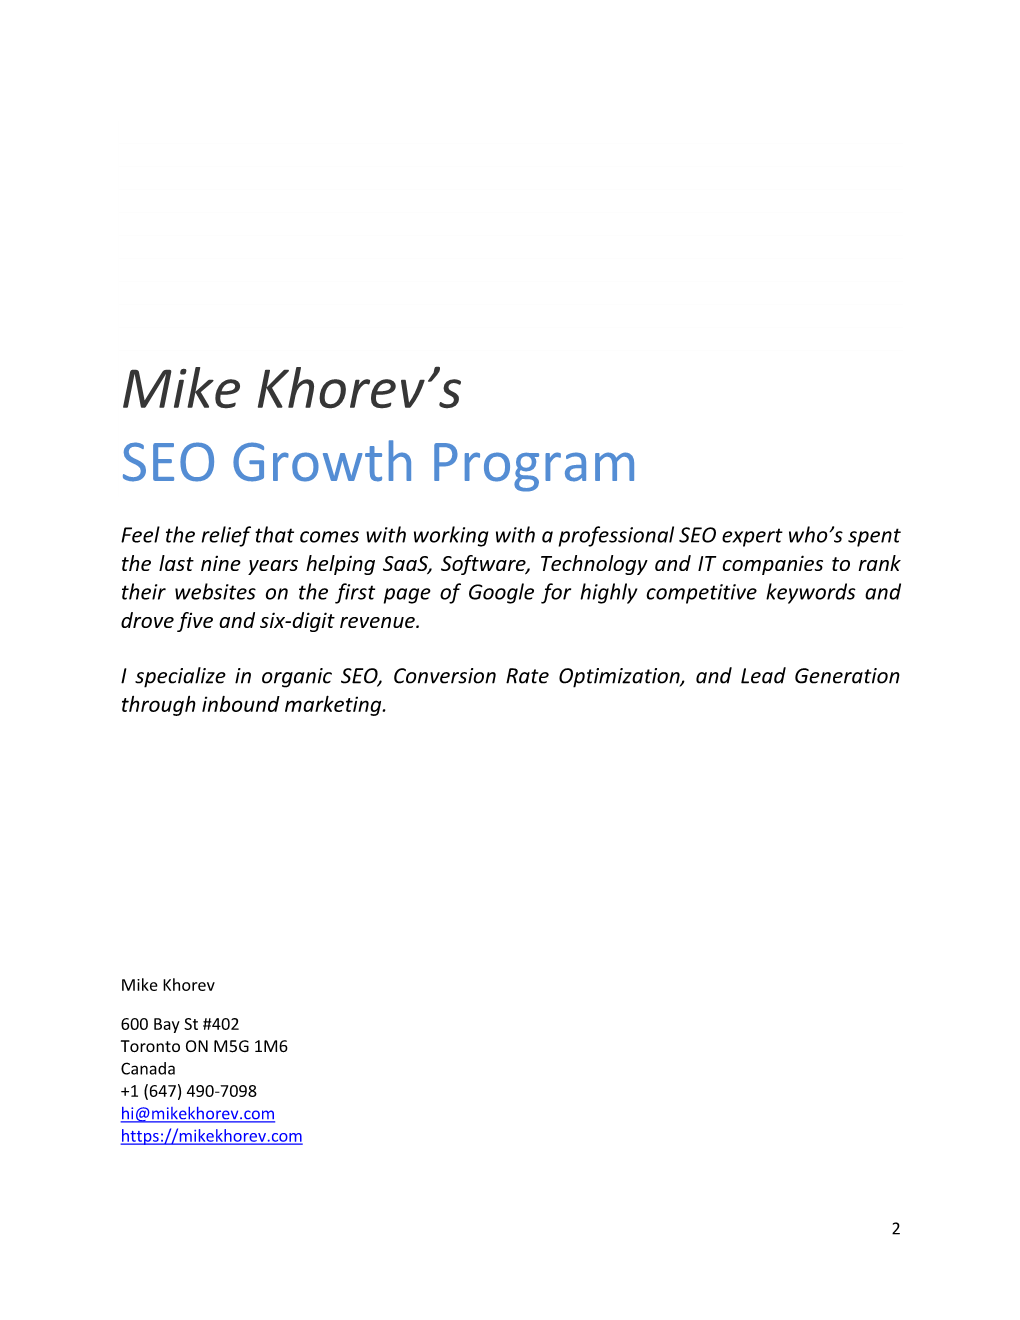 Mike Khorev's SEO Growth Program